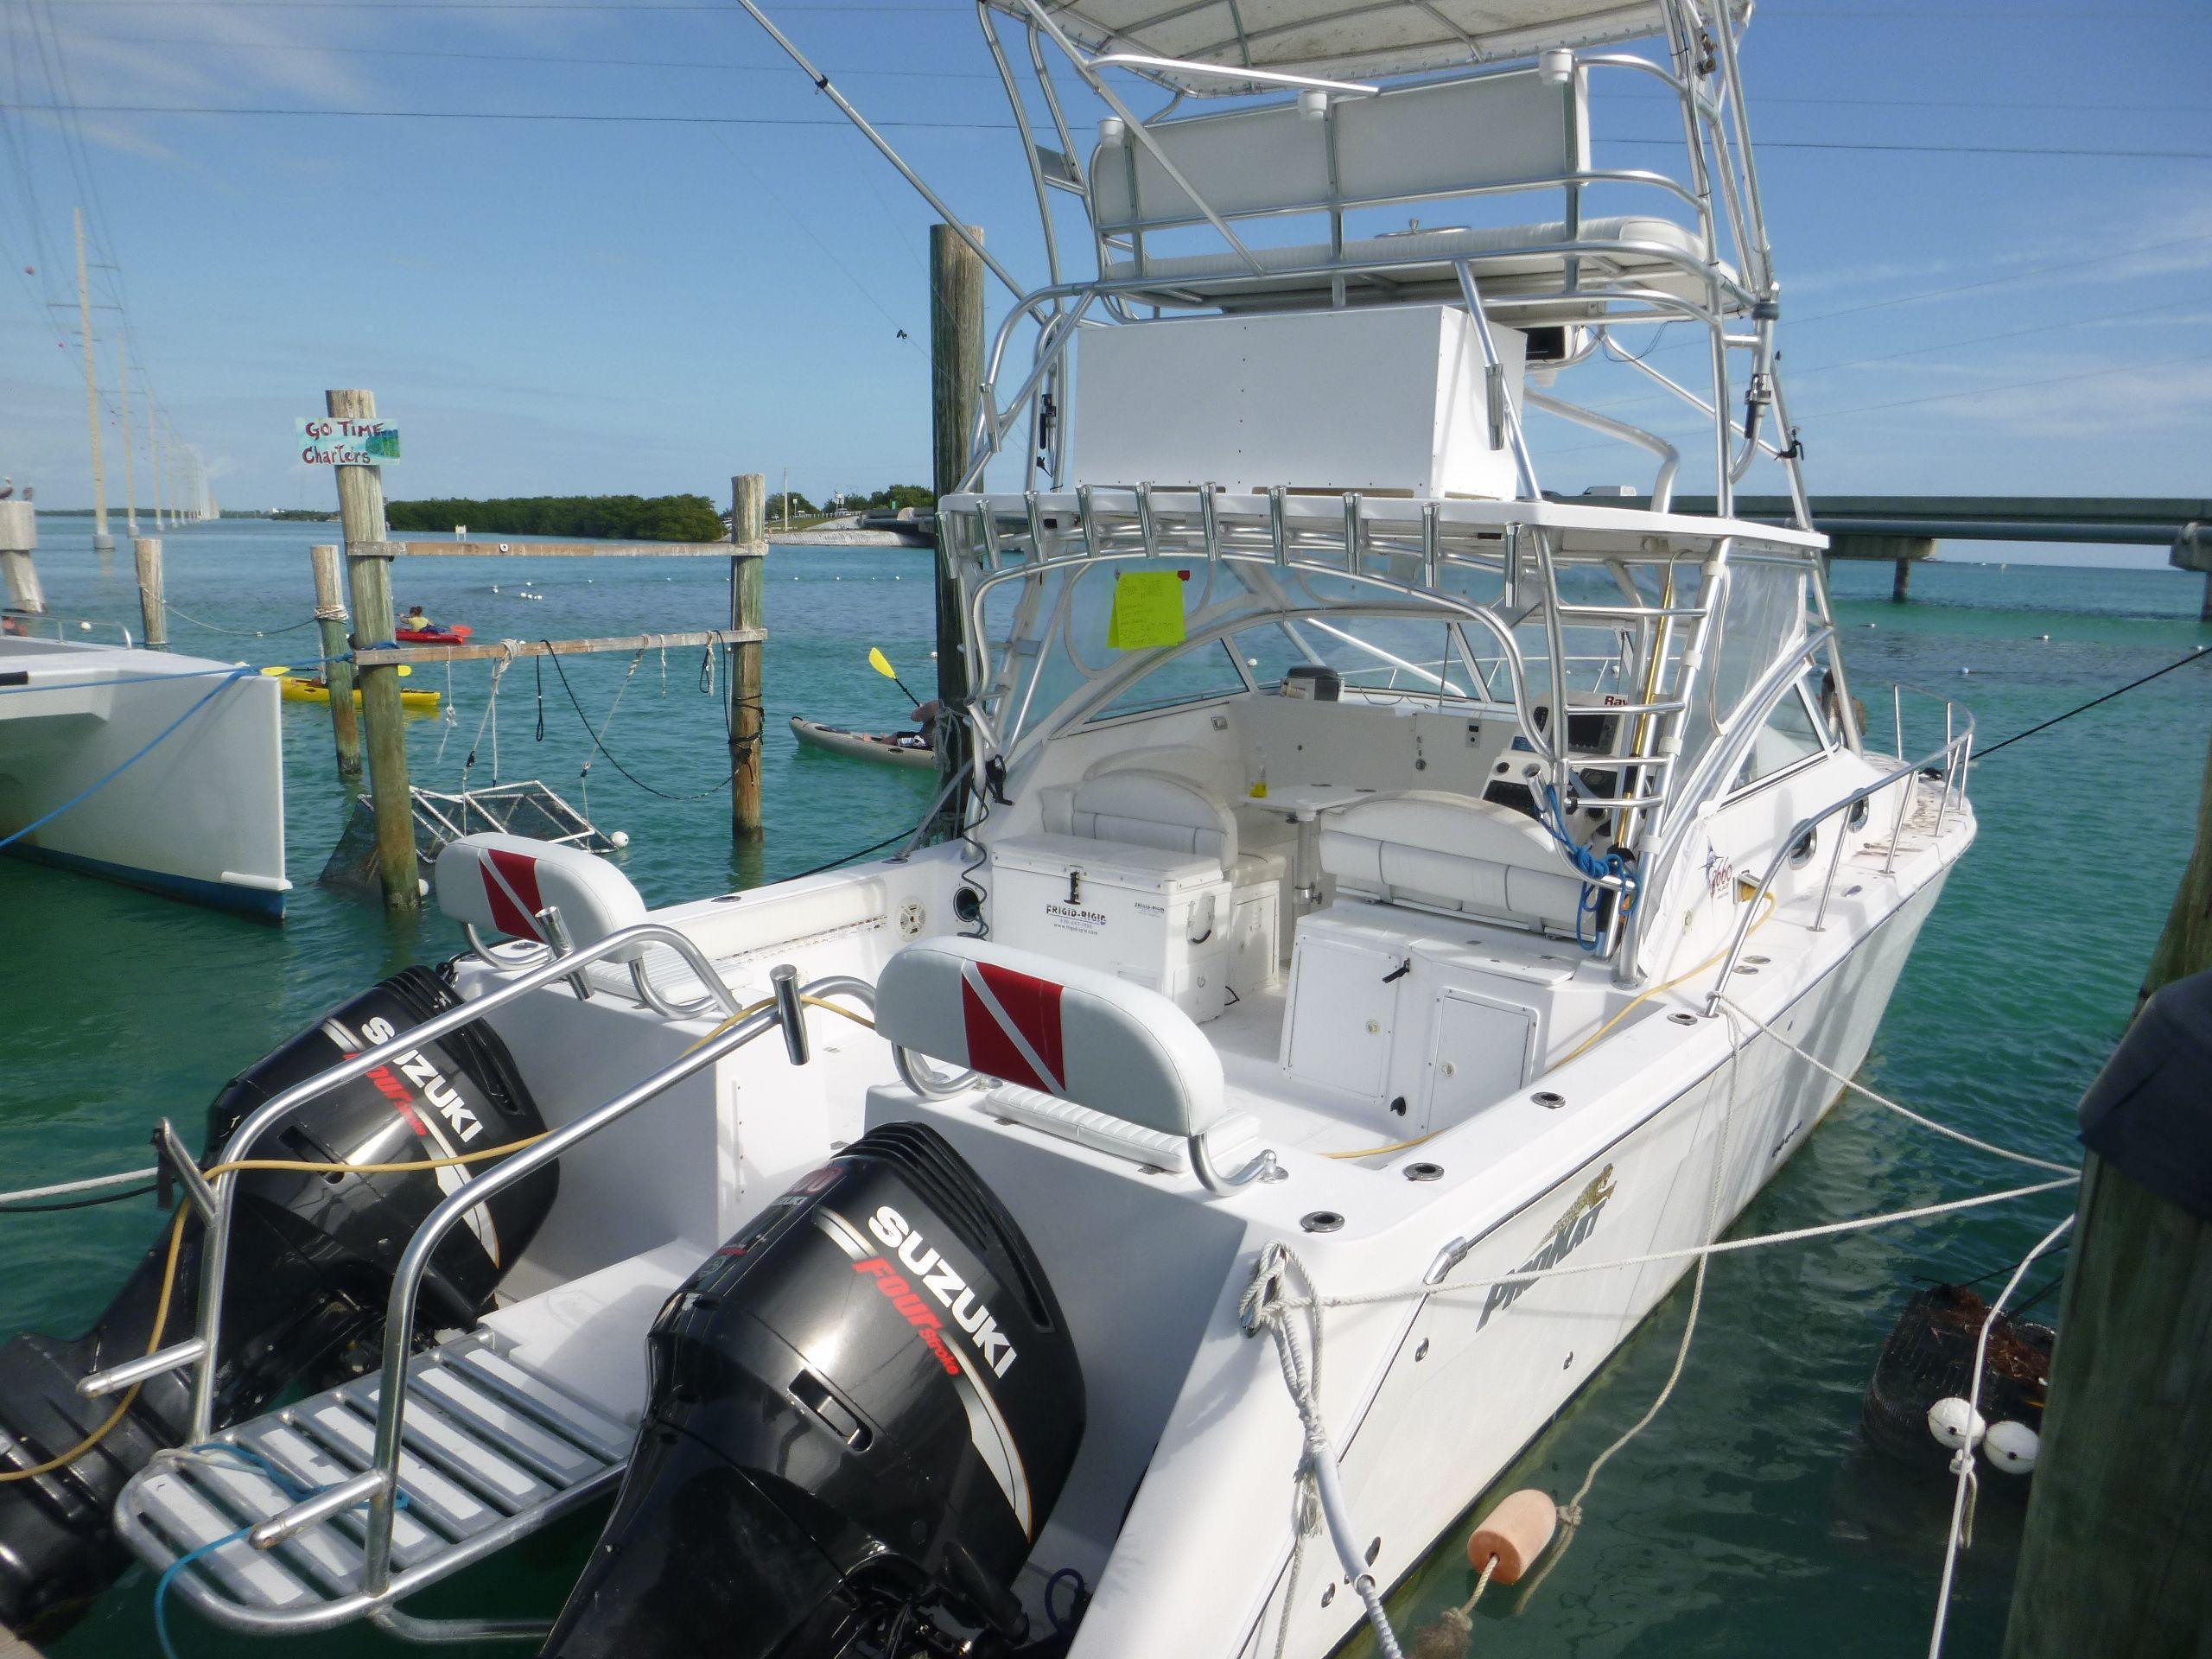 ProKat 3660 Sport Fish, Key Largo